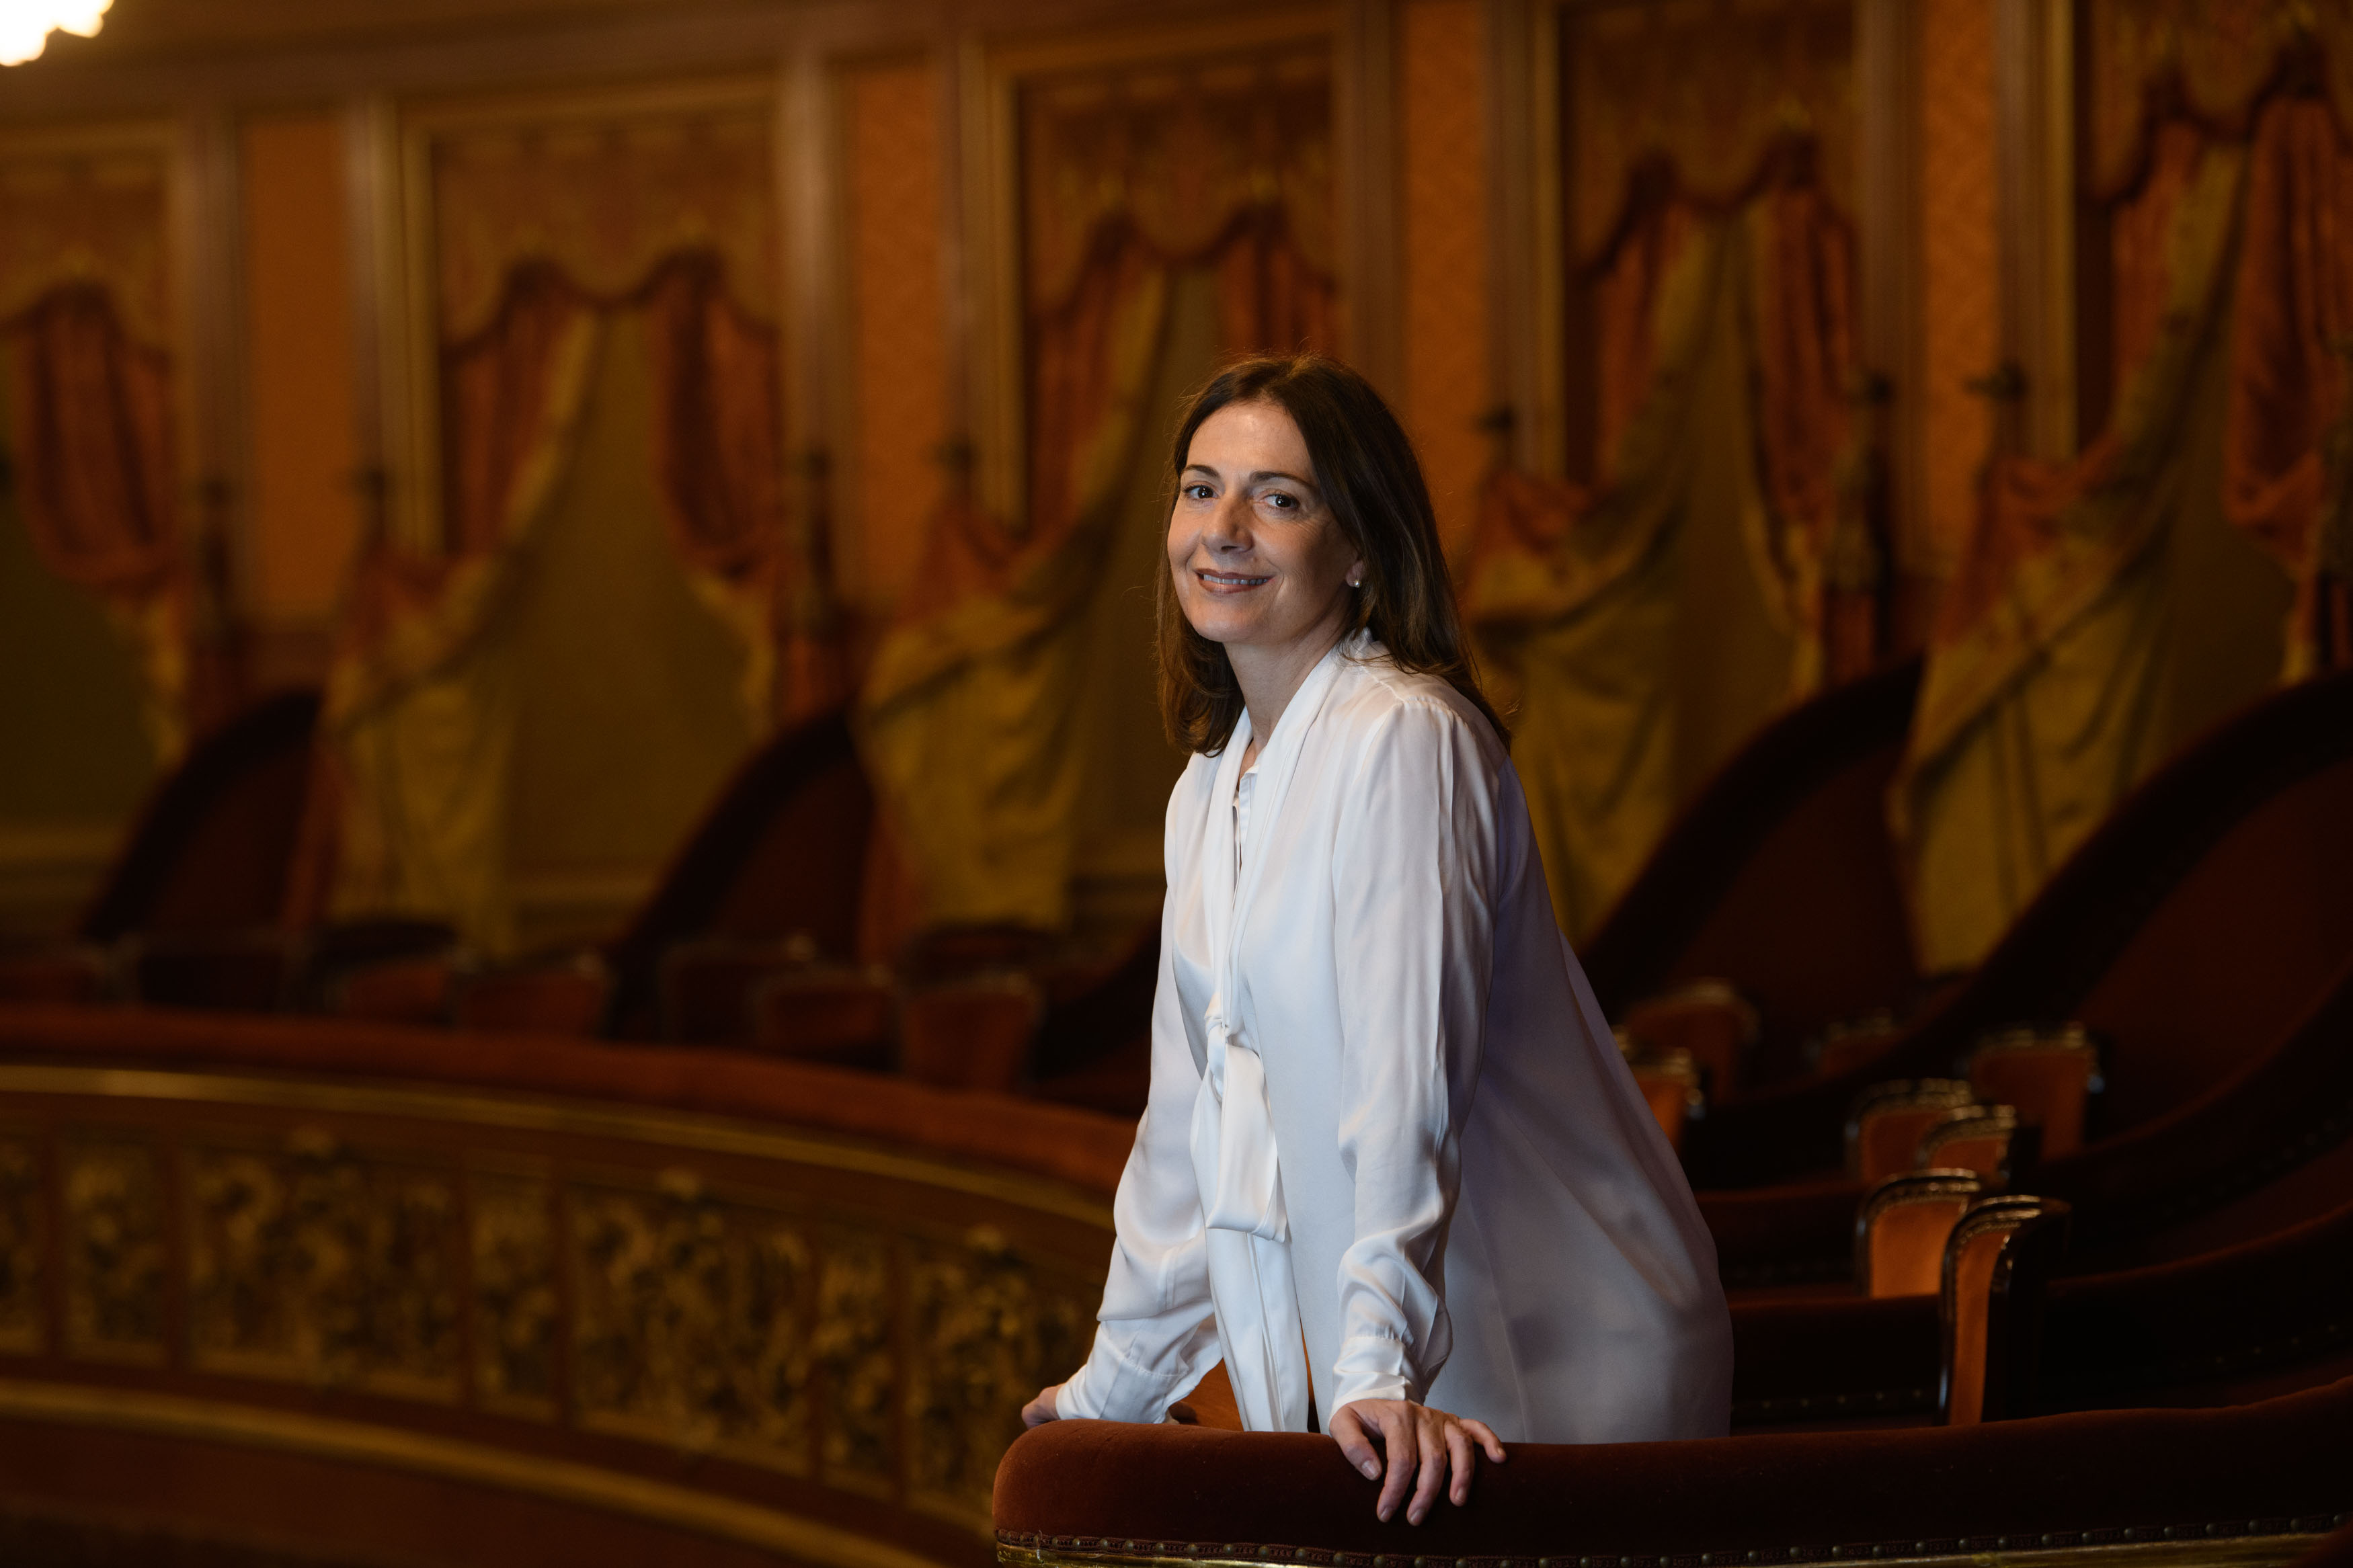 Un premio internacional y el lado oscuro del mundo de la ópera, según Verónica Cangemi